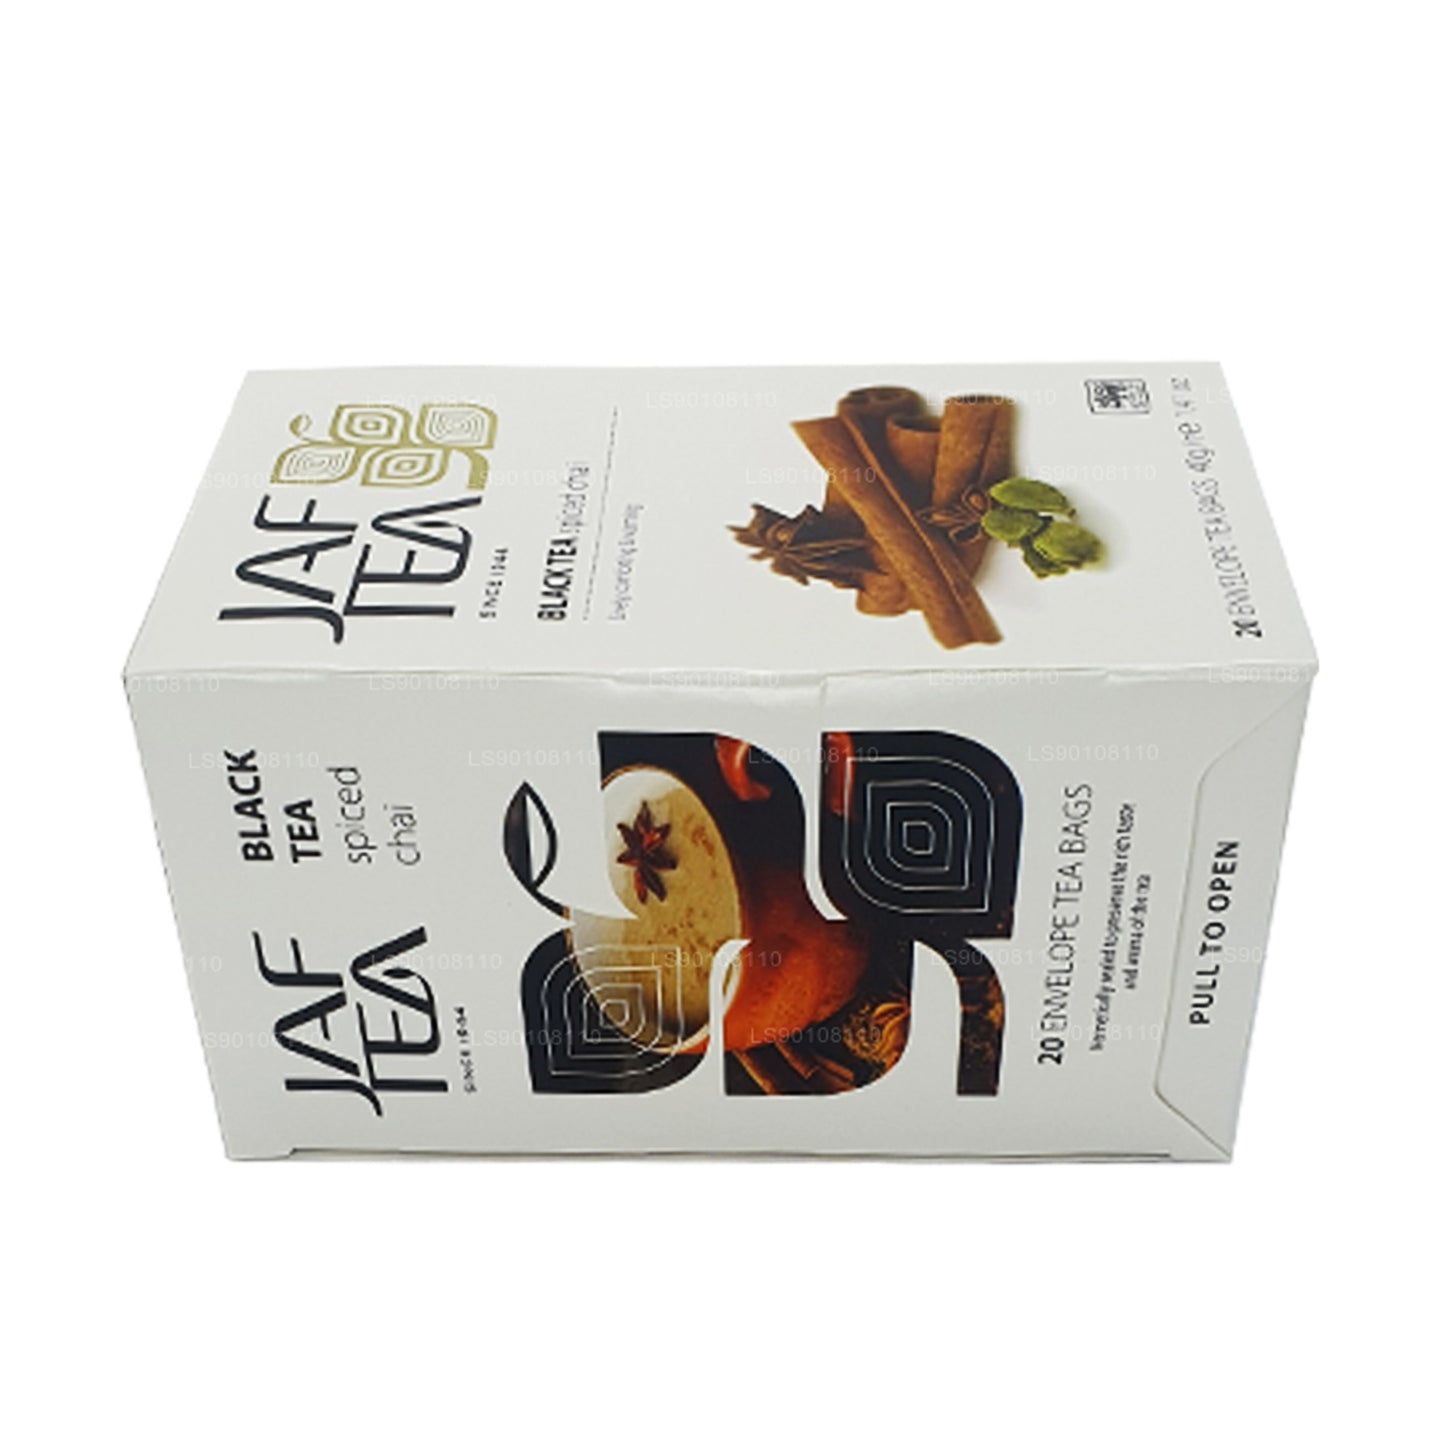 Jaf Tea Pure Spice Collection Schwarzer Tee Gewürzter Chai (40 g) 20 Teebeutel